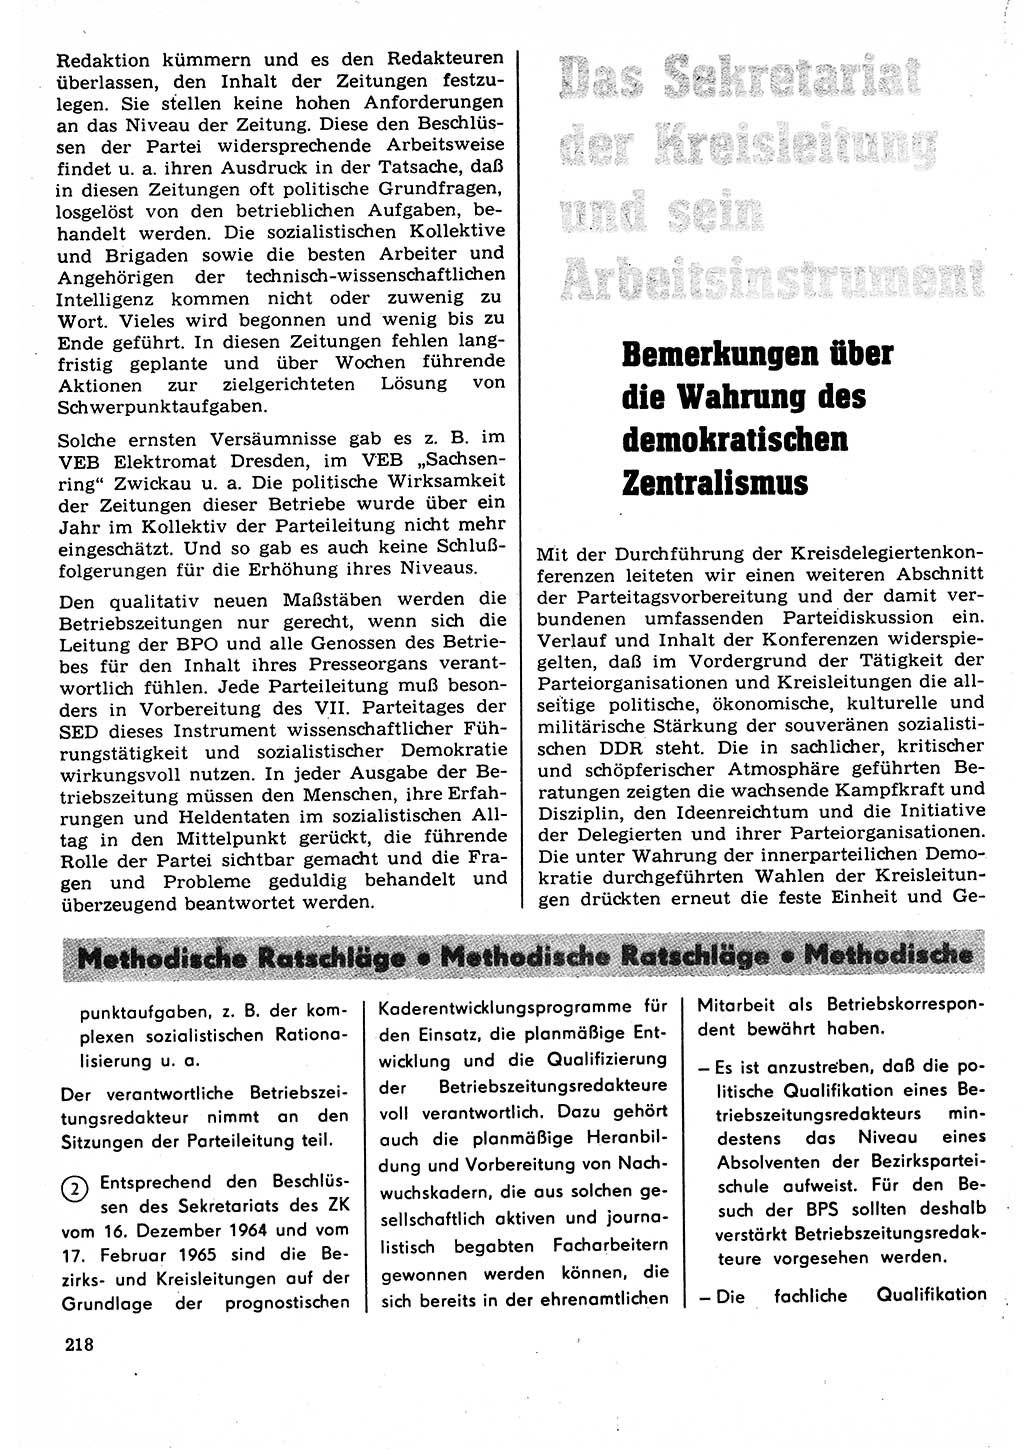 Neuer Weg (NW), Organ des Zentralkomitees (ZK) der SED (Sozialistische Einheitspartei Deutschlands) für Fragen des Parteilebens, 22. Jahrgang [Deutsche Demokratische Republik (DDR)] 1967, Seite 218 (NW ZK SED DDR 1967, S. 218)